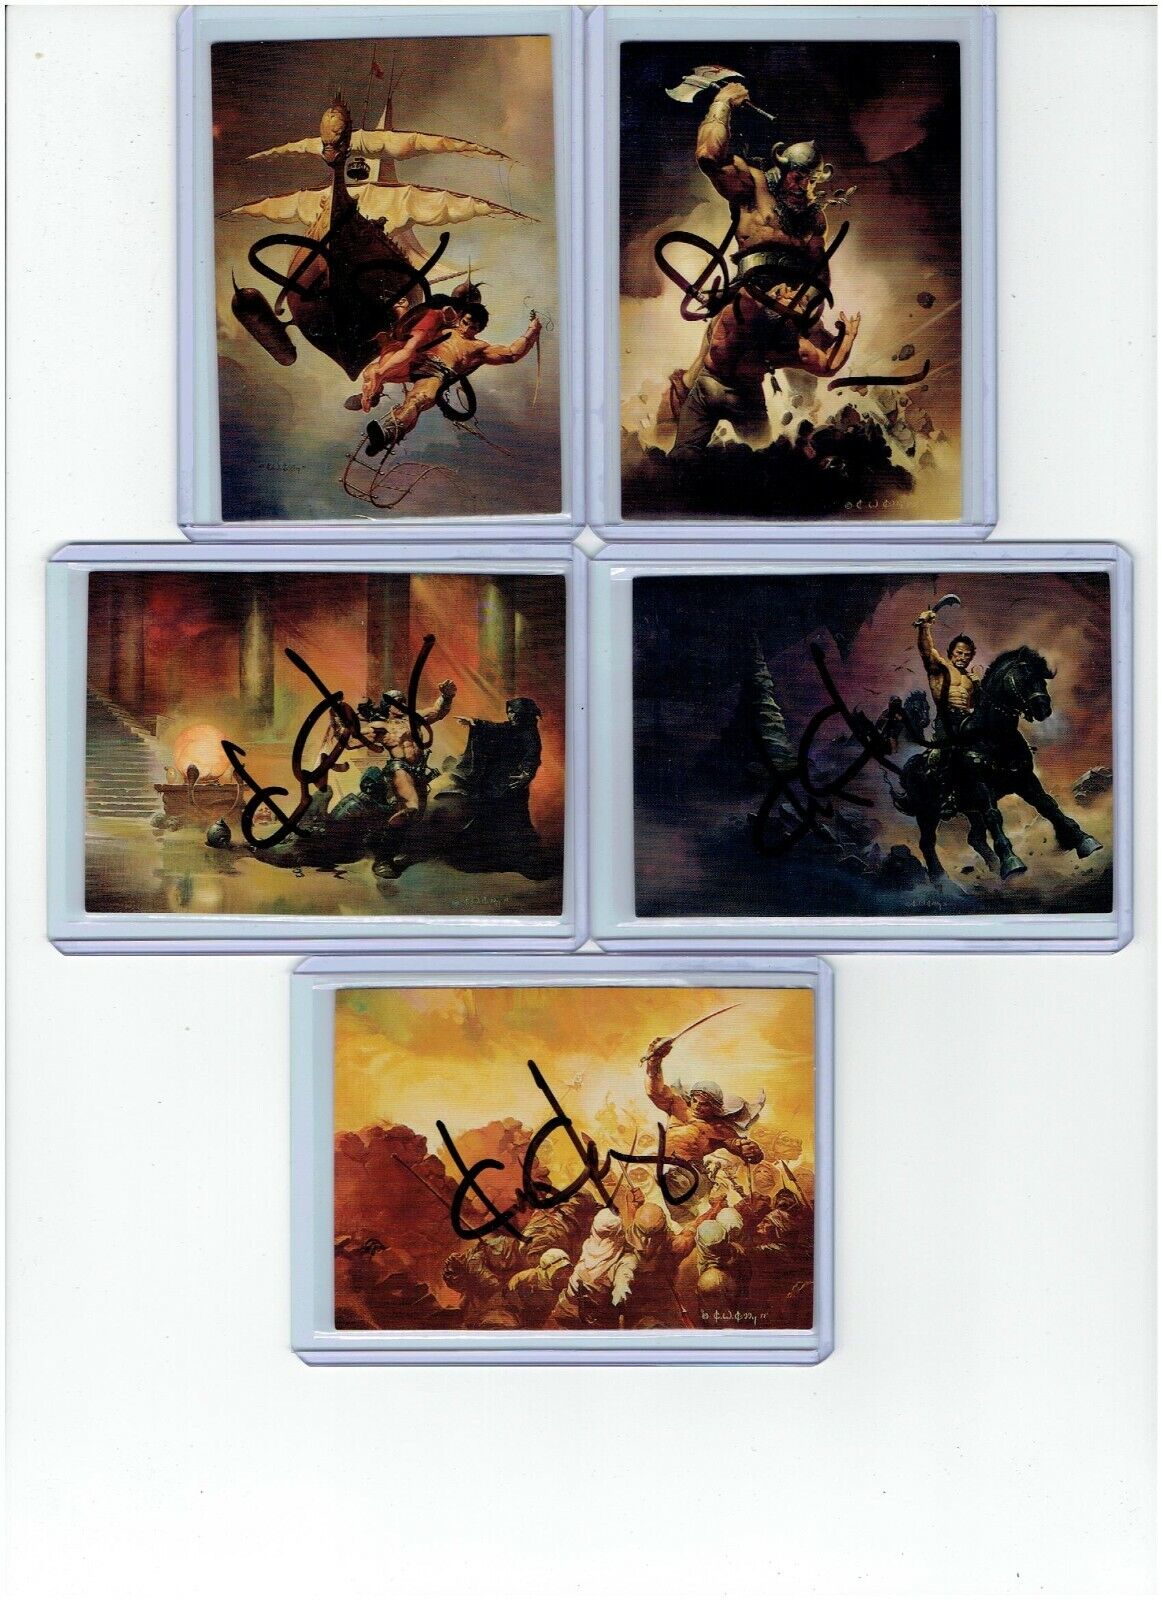 Ken Kelly Signed Series 1 Fantasy Art Trading Cards #71 - #75 1992 FPG